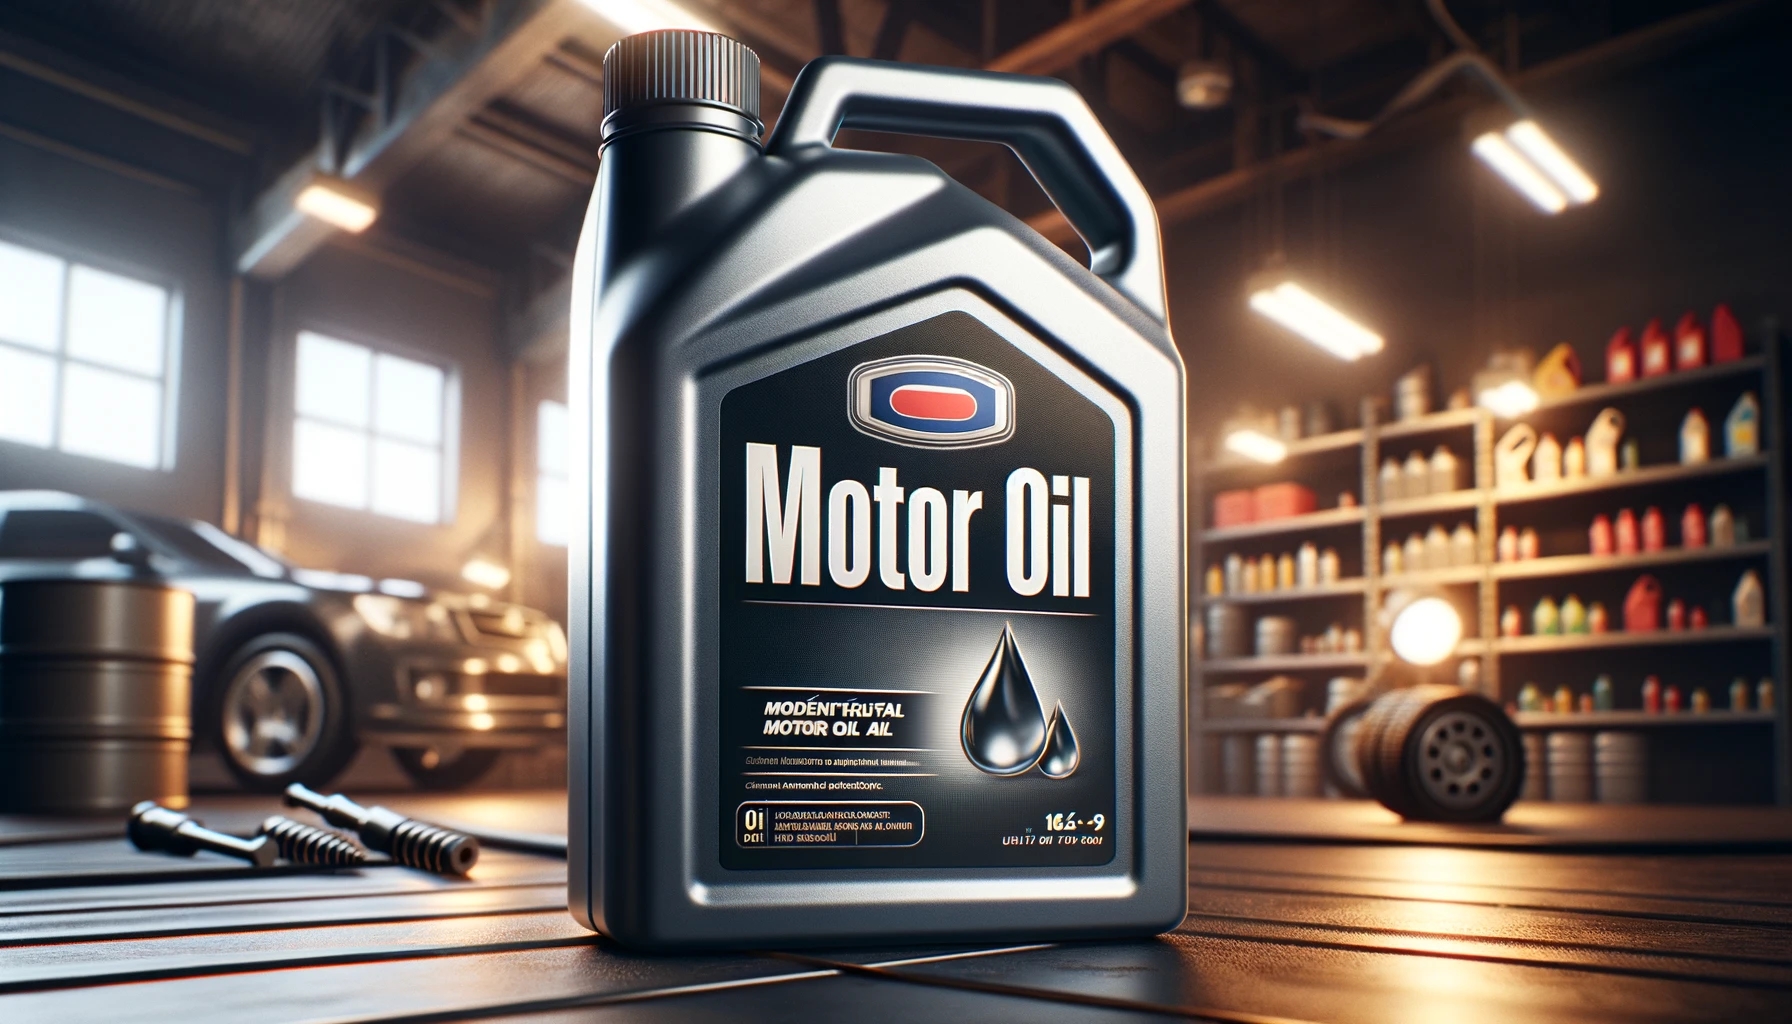 Featured image for “Jak se vyznat ve značení motorových olejů”